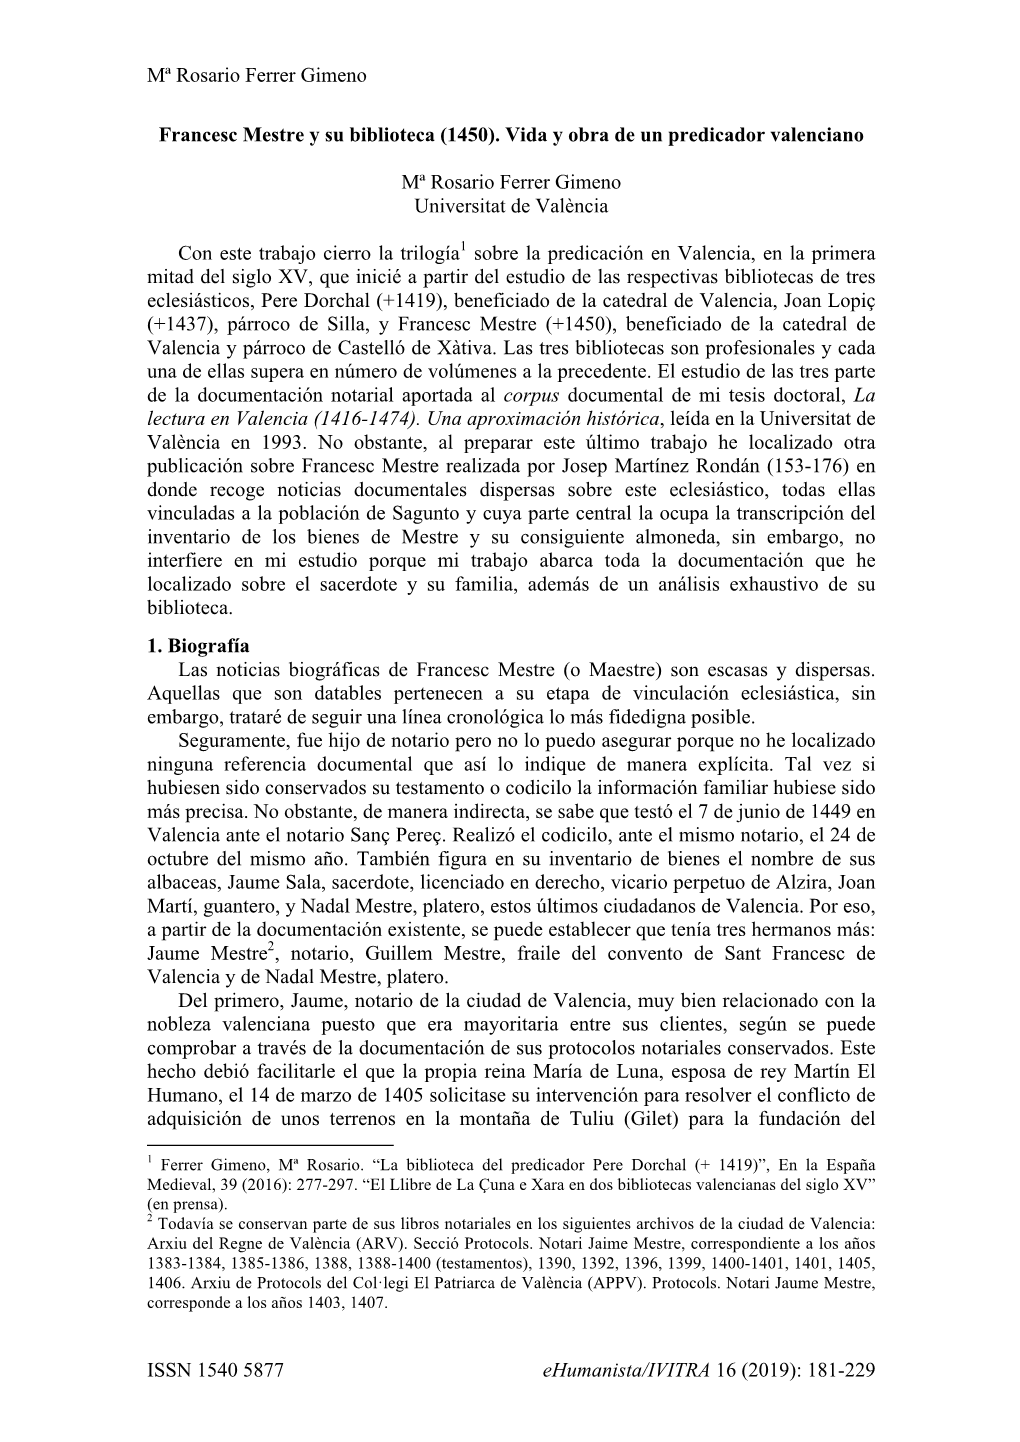 Mª Rosario Ferrer Gimeno ISSN 1540 5877 Ehumanista/IVITRA 16 (2019